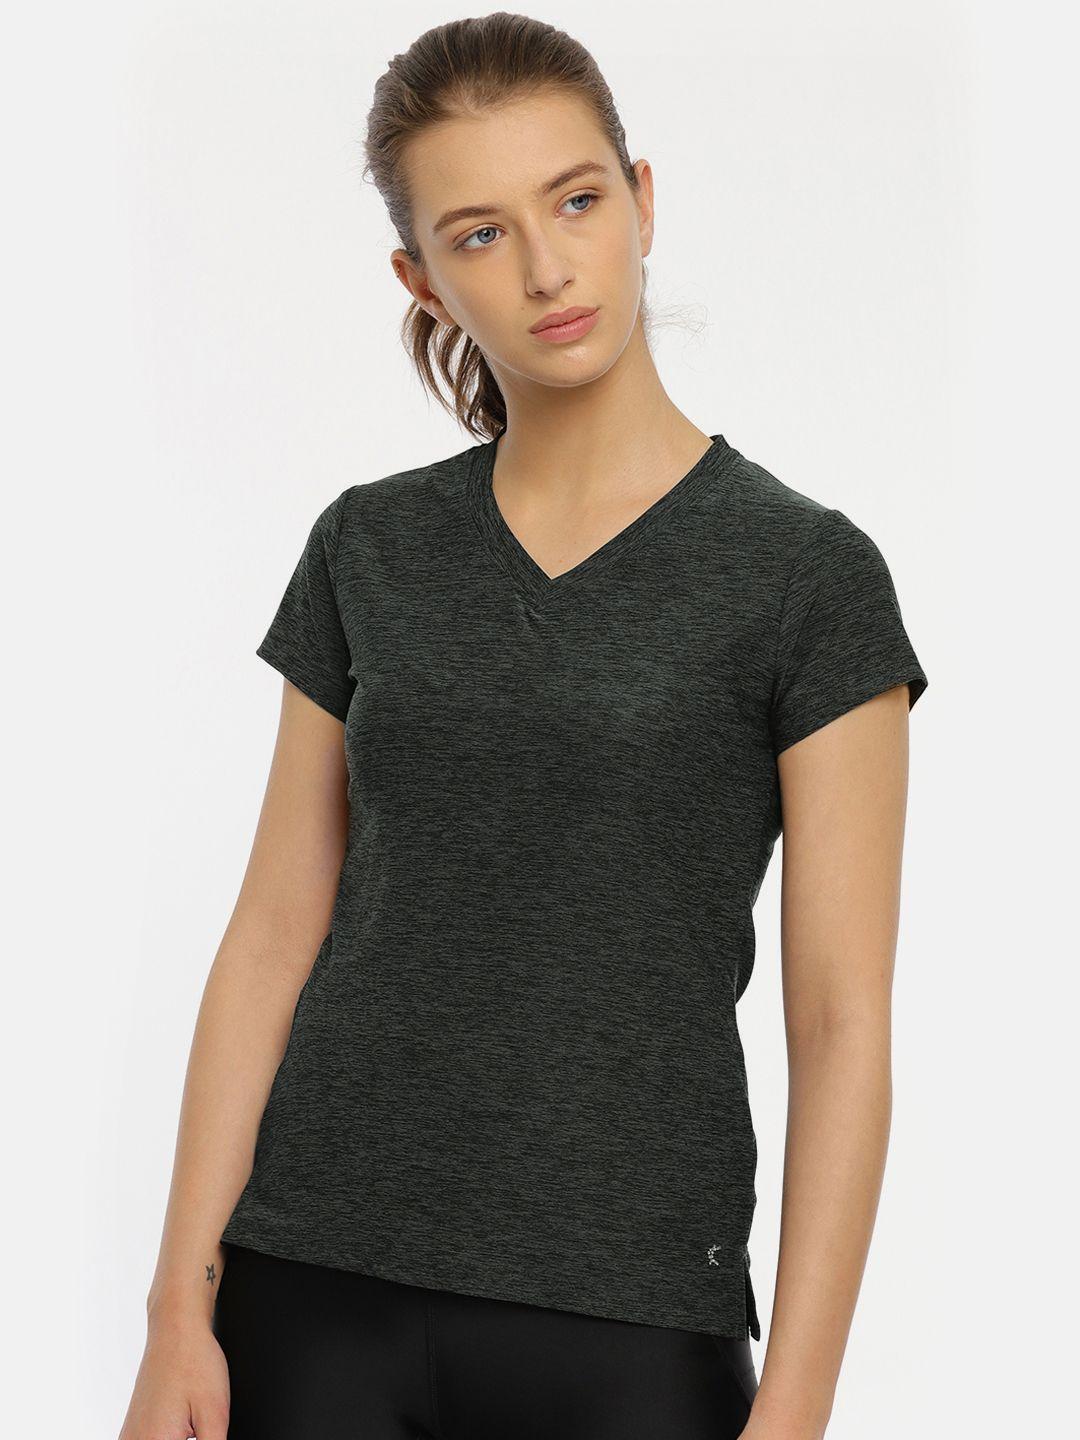 kanvin women charcoal black self design v-neck activewear t-shirt